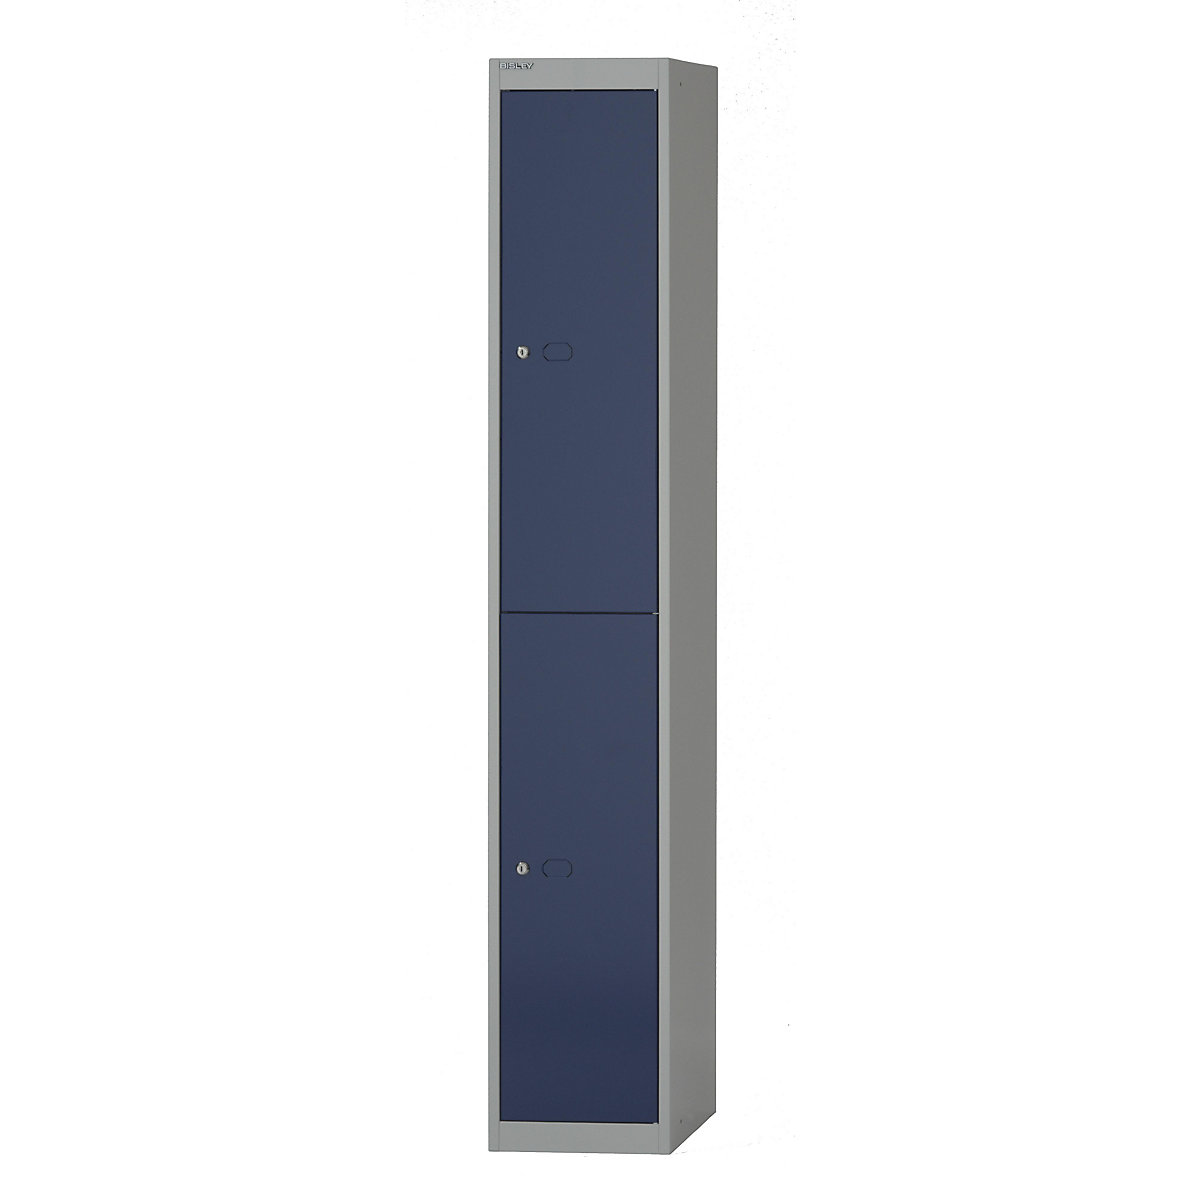 BISLEY OFFICE Garderobensystem, Tiefe 305 mm, 2 Fächer mit je 1 Kleiderhaken, Korpusfarbe Lichtgrau, Türfarbe Oxfordblau